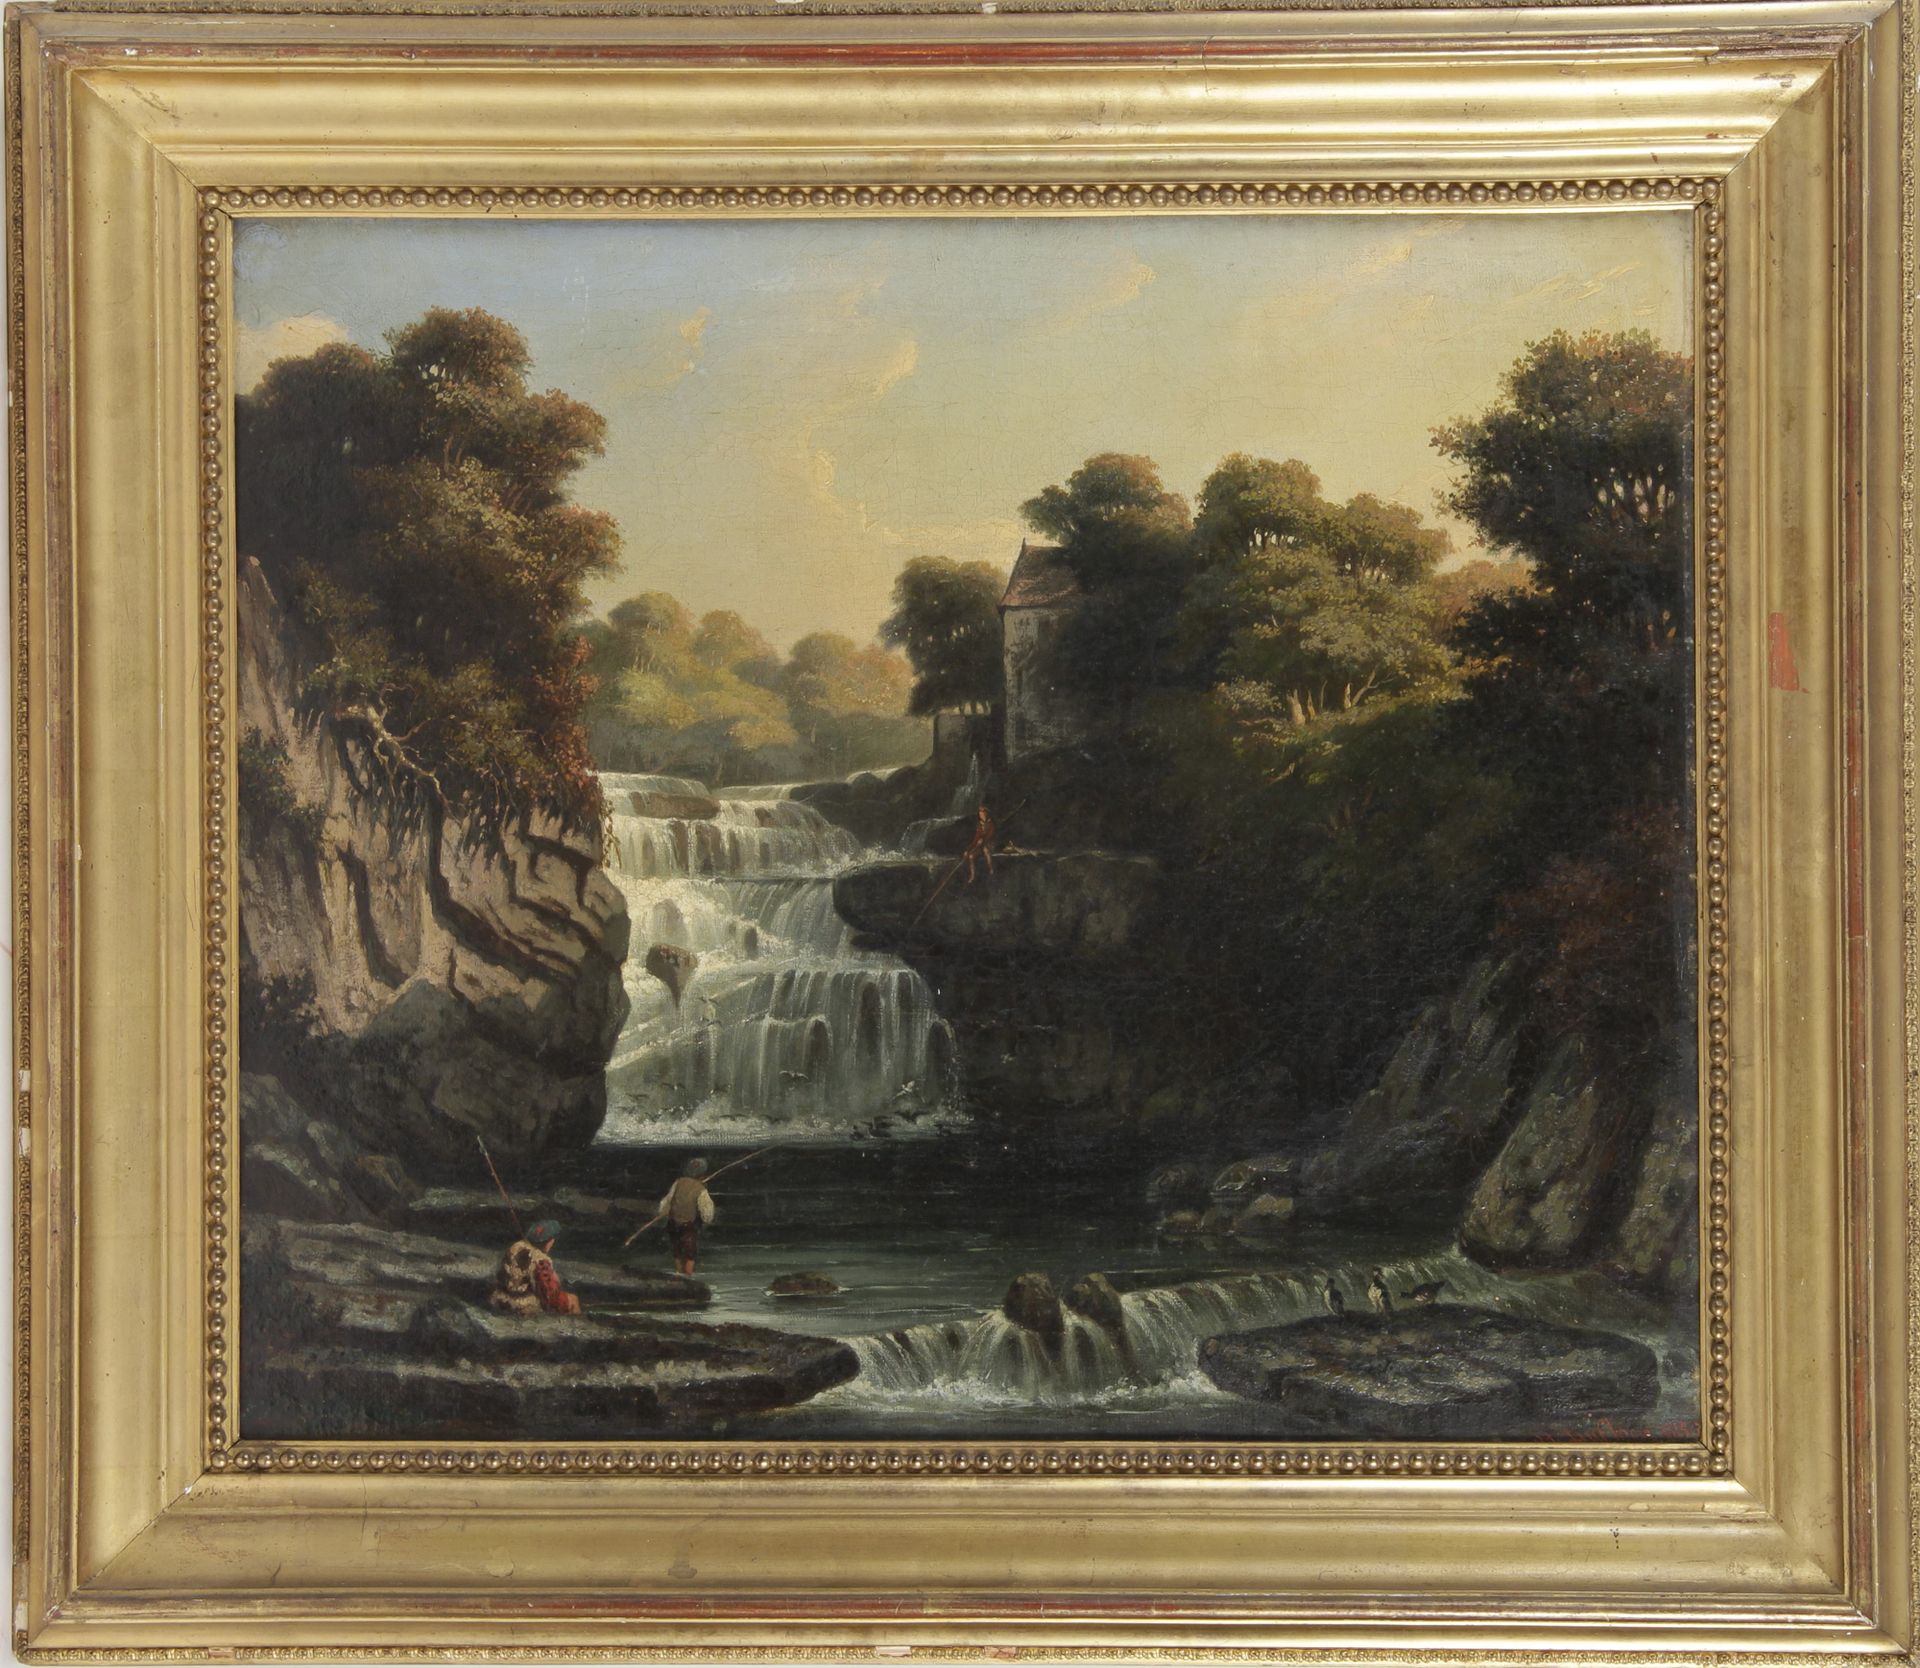 Null H. DUFLOCQ, escuela francesa del siglo XIX

"Paisaje de cascadas", óleo sob&hellip;